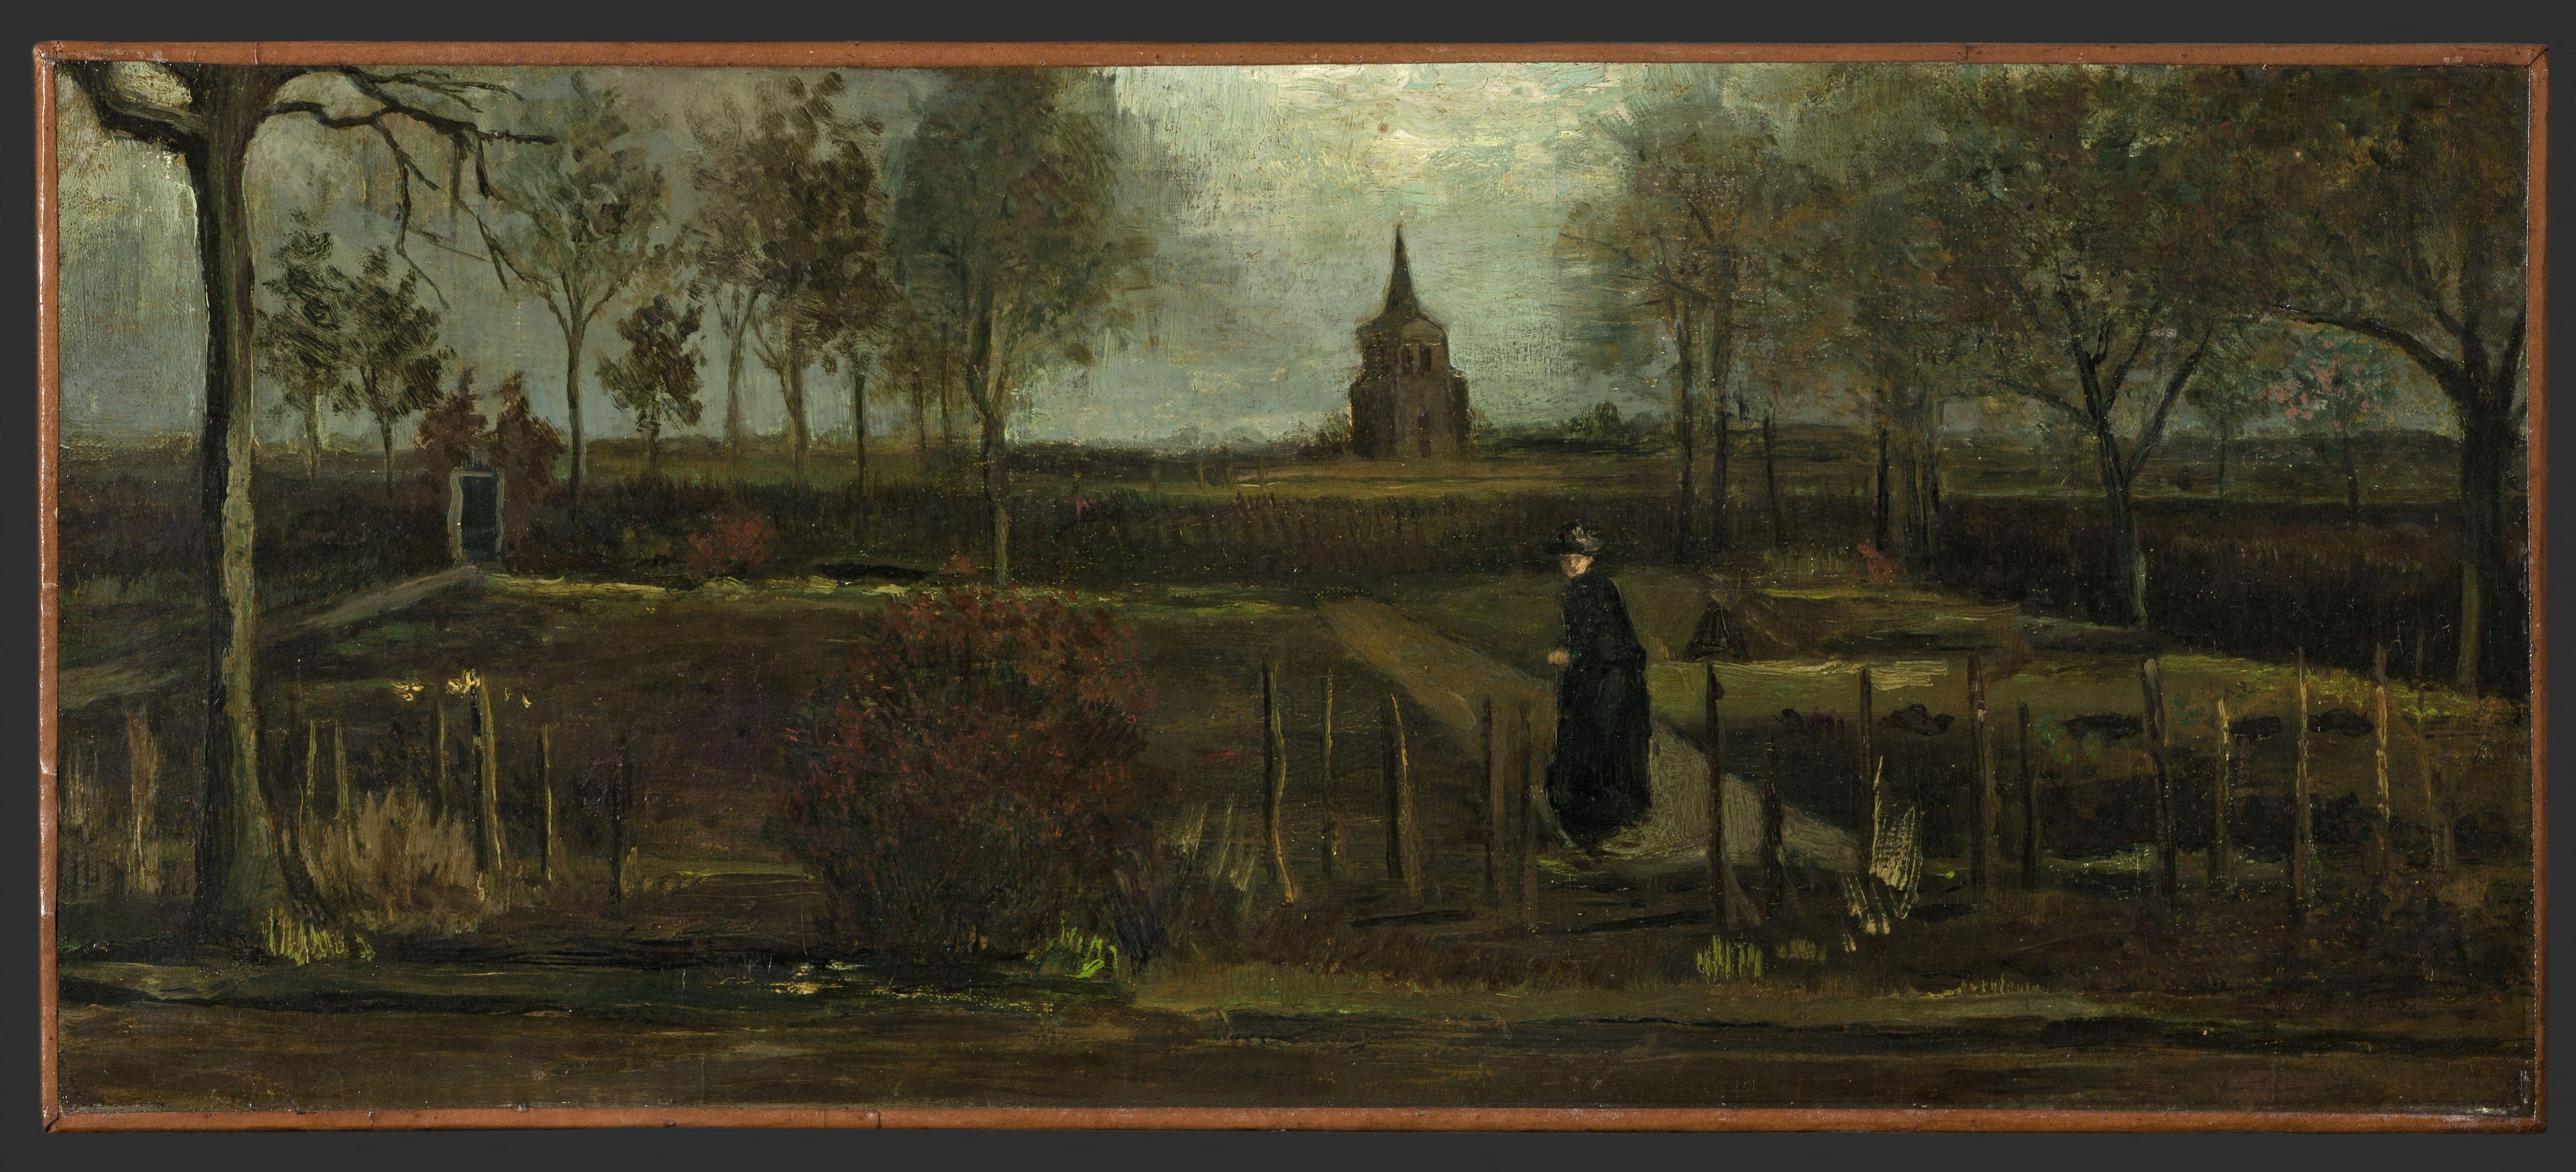 El cuadro "Jardín de primavera", de Van Gogh (1884)